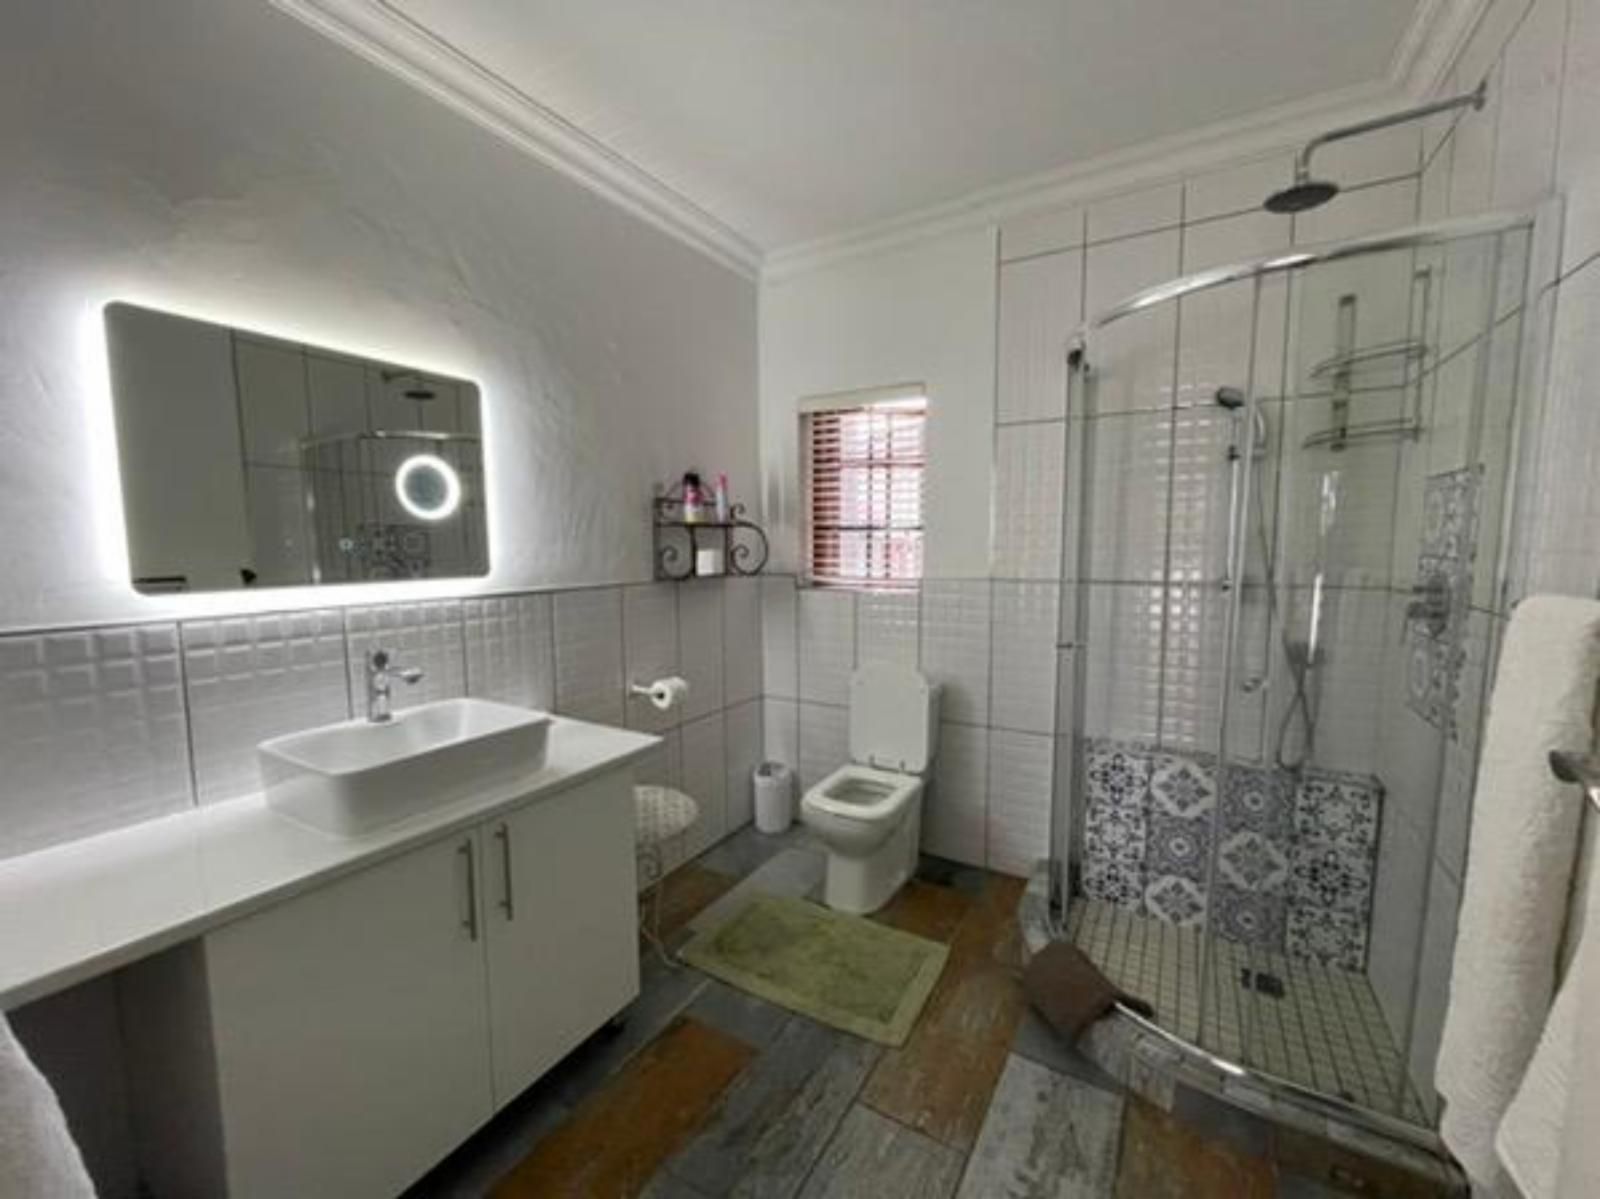 Inbloem Dan Pienaar Bloemfontein Free State South Africa Unsaturated, Bathroom